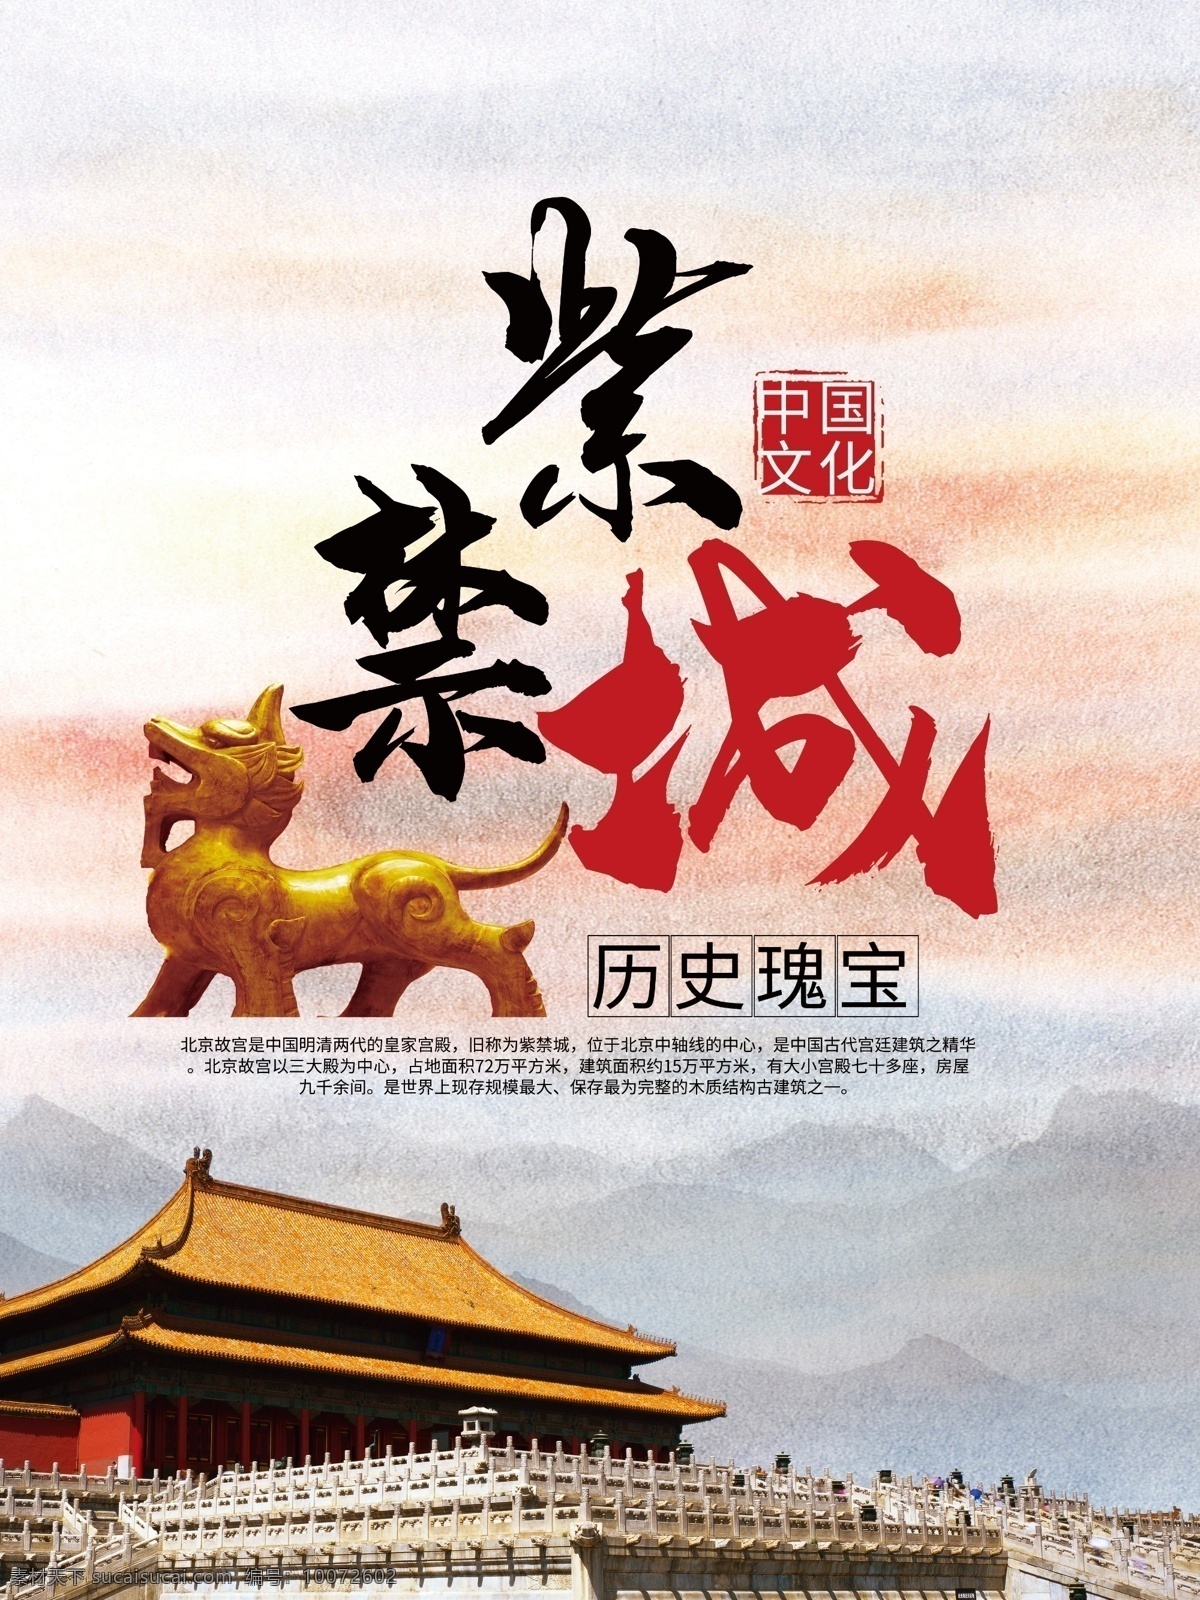 紫禁城旅游 中国文化 中国旅游 北京旅游 紫禁城 北京 中国 旅游海报